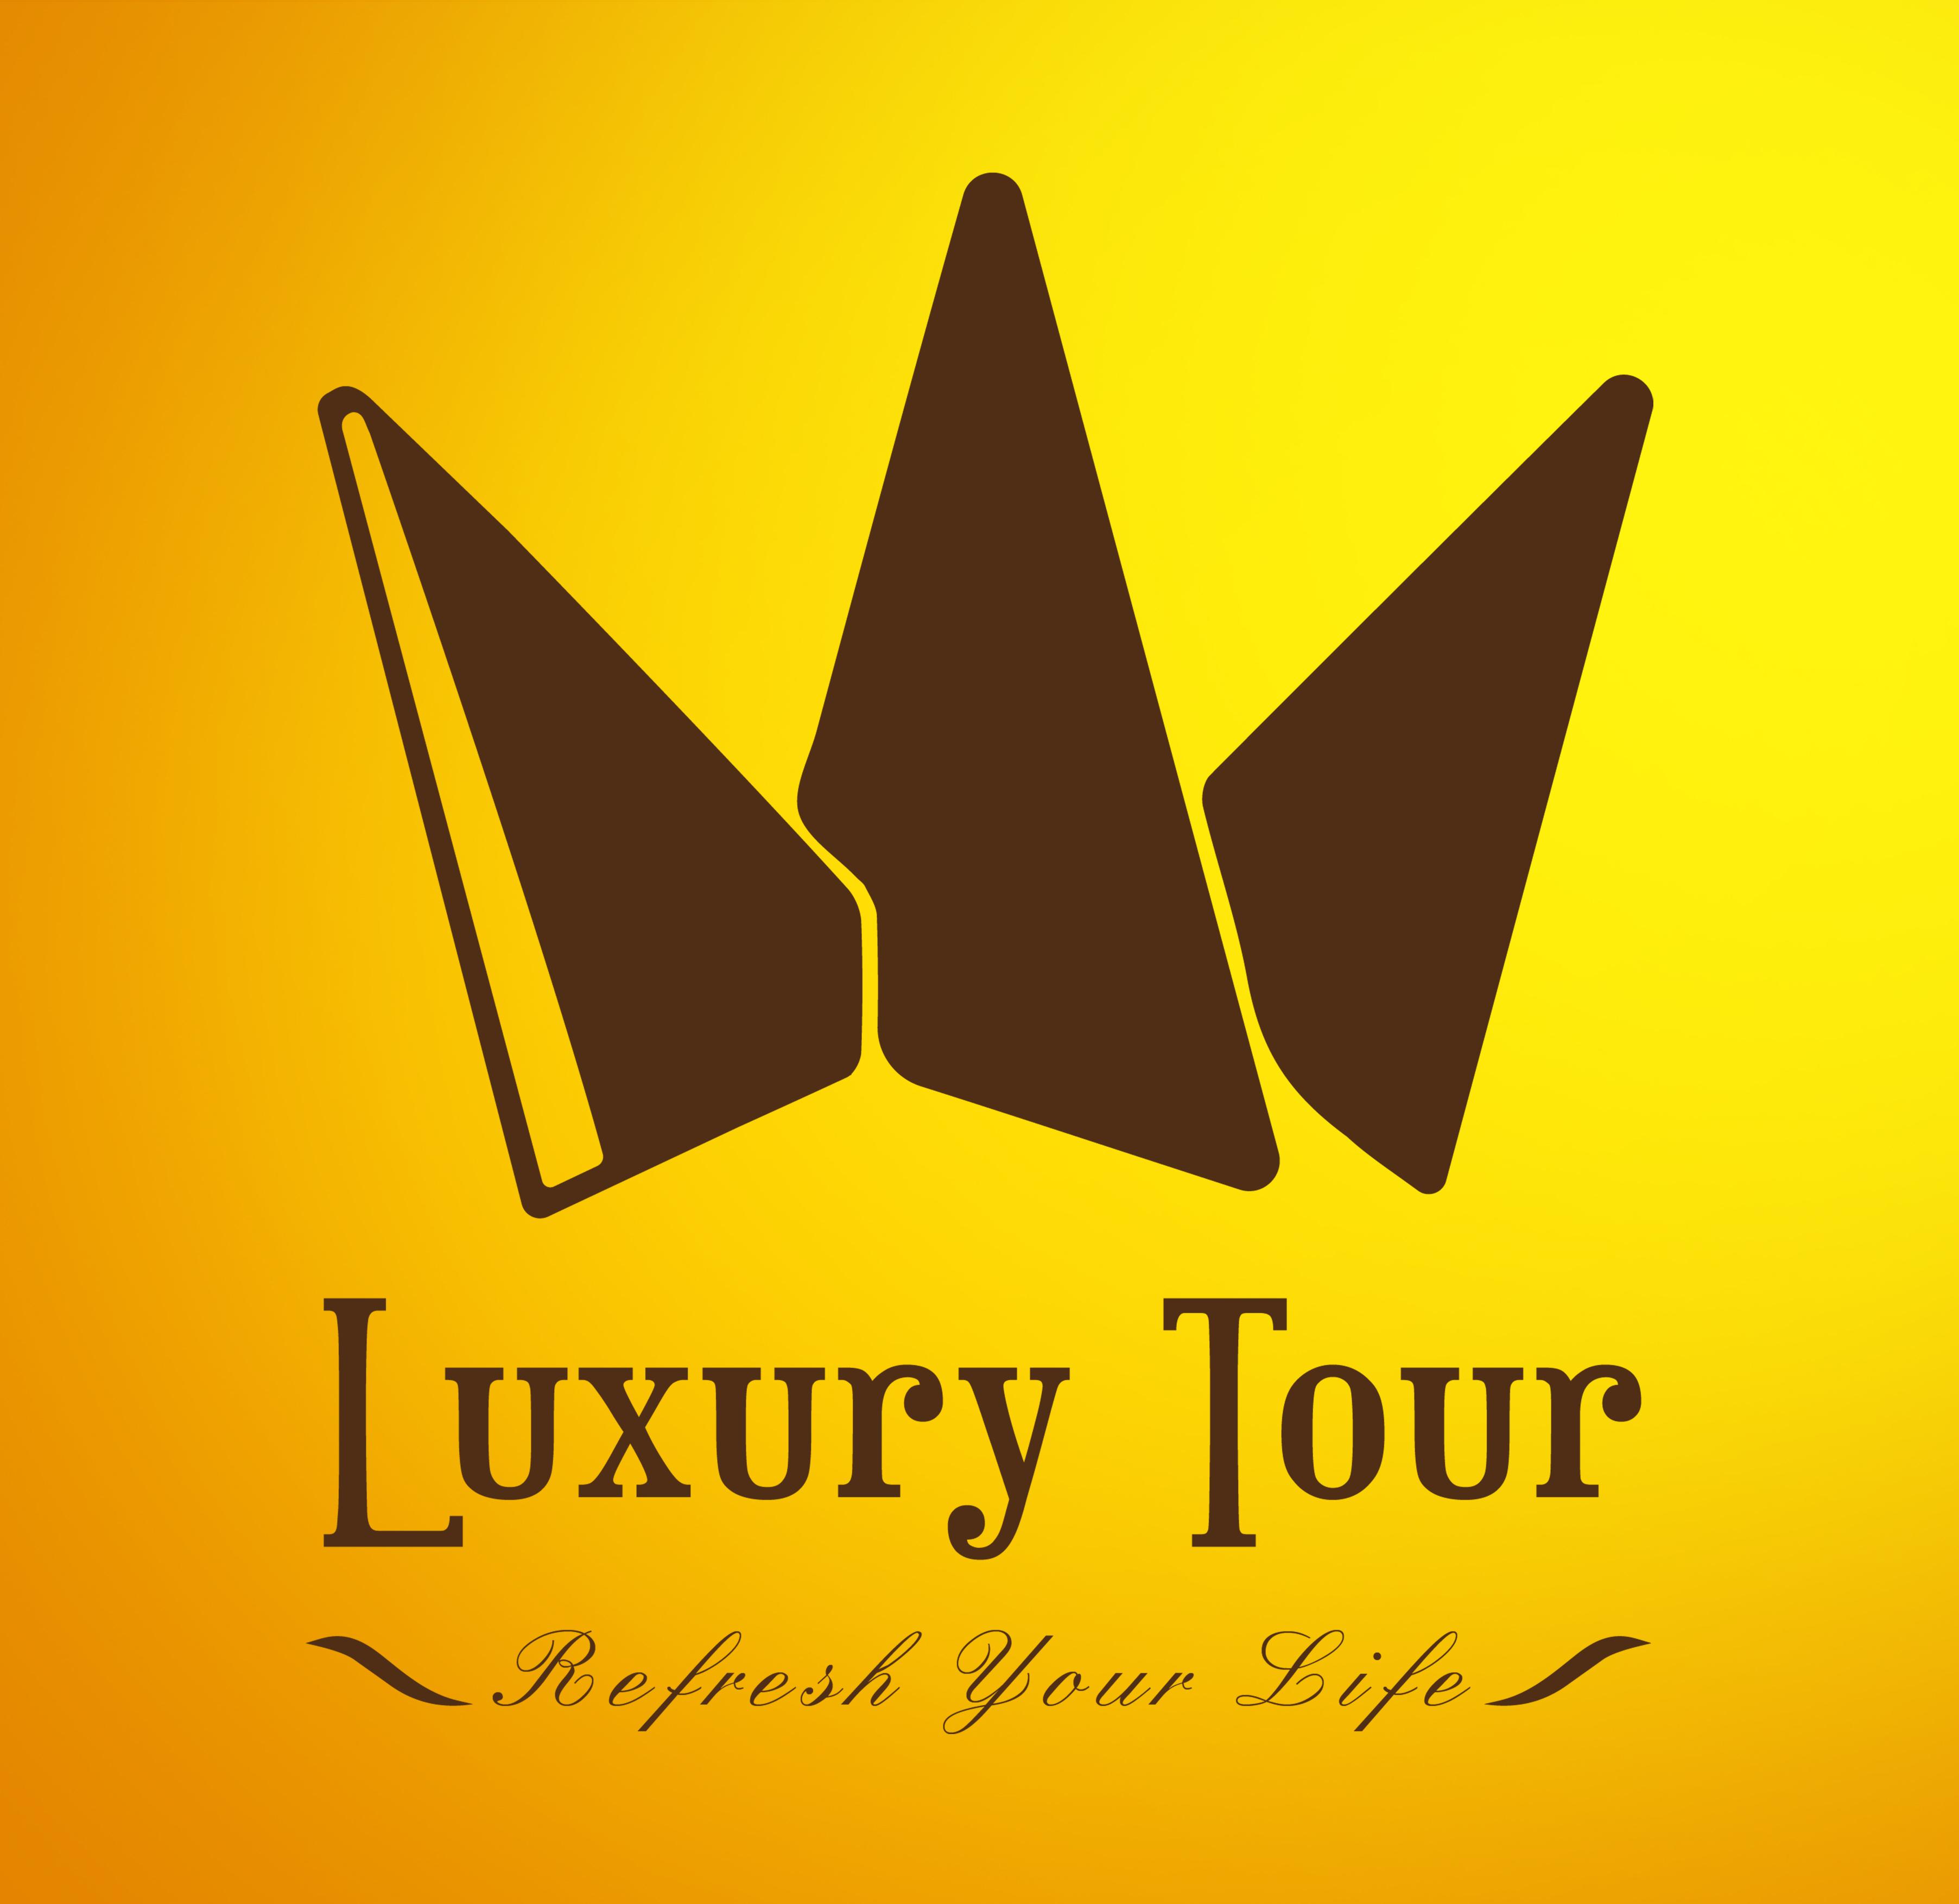 Luxury tour 